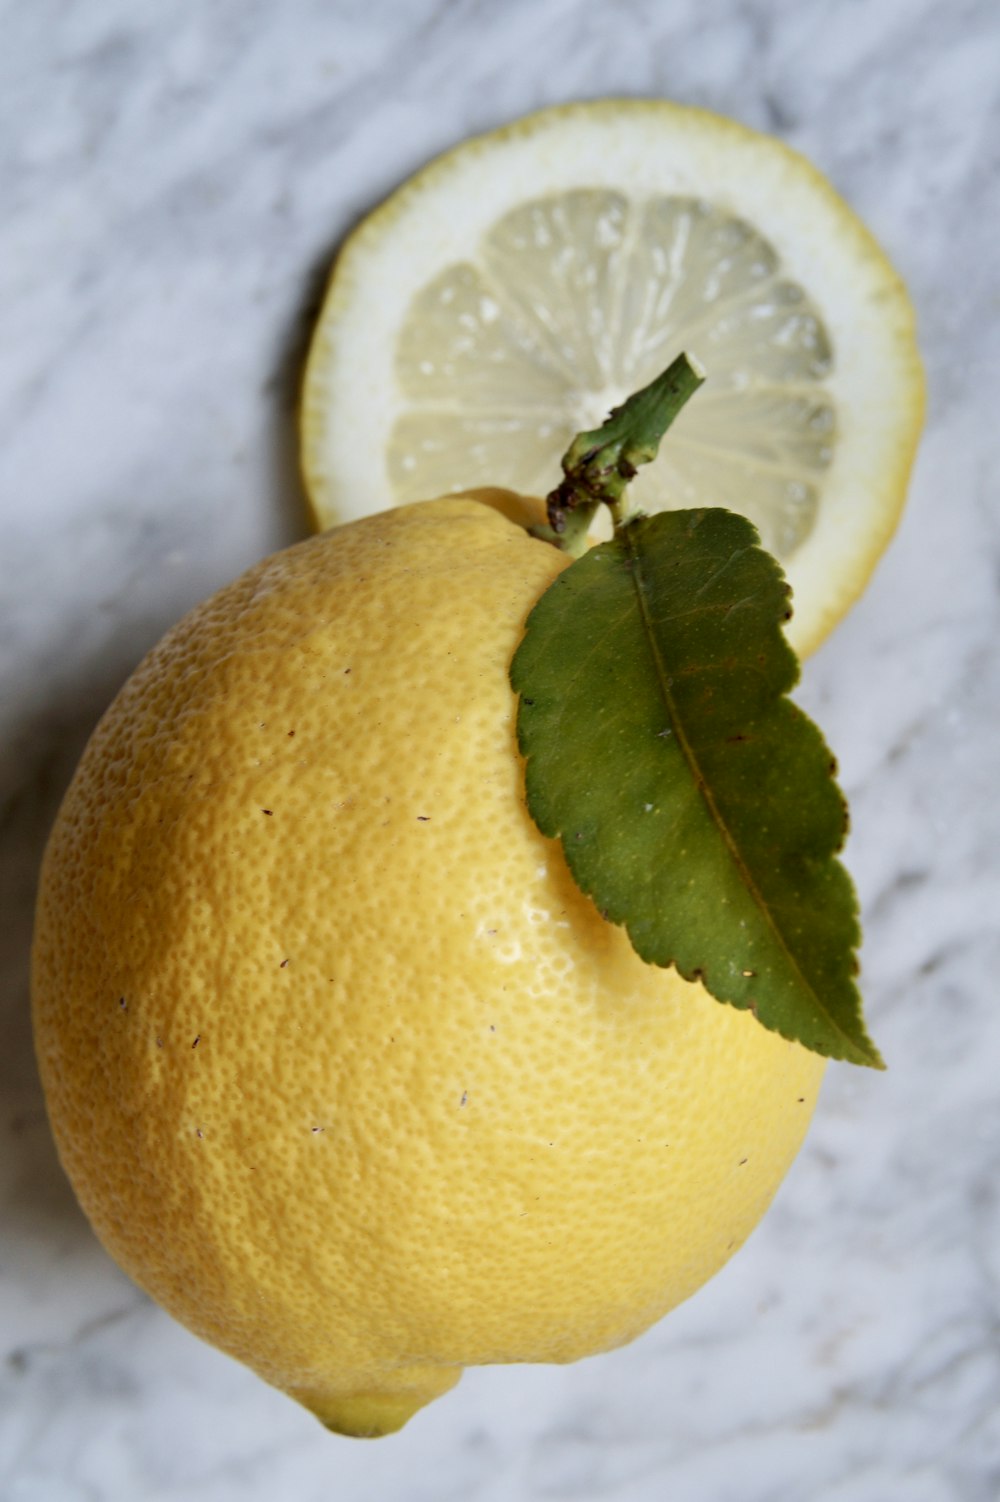 yellow lemon fruit on white textile